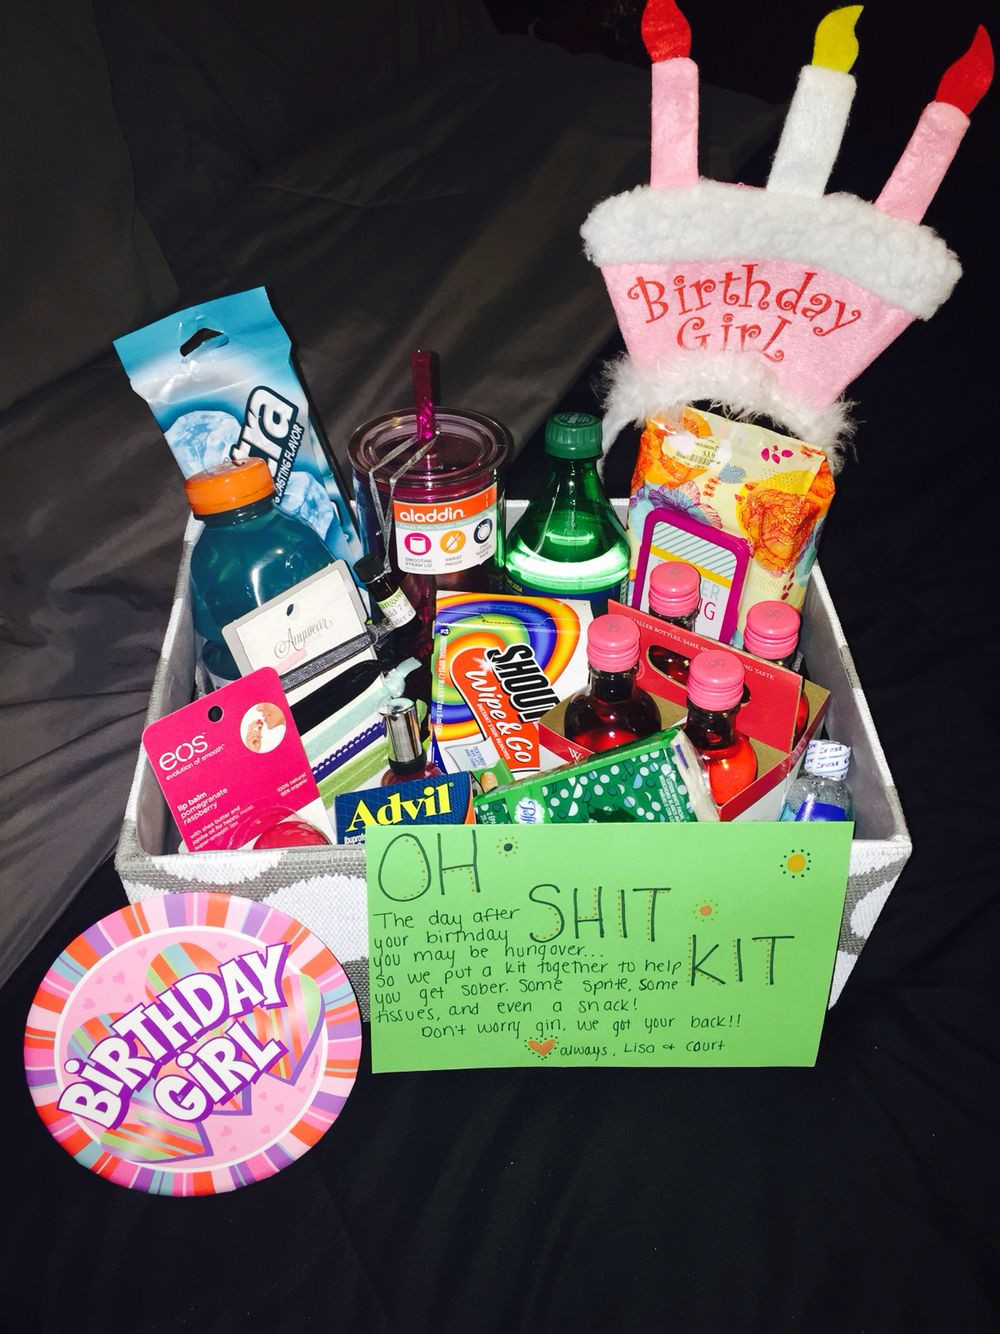 21St Birthday Gift Ideas For Best Friend
 Bestfriend s 21st birthday "Oh Shit Kit"